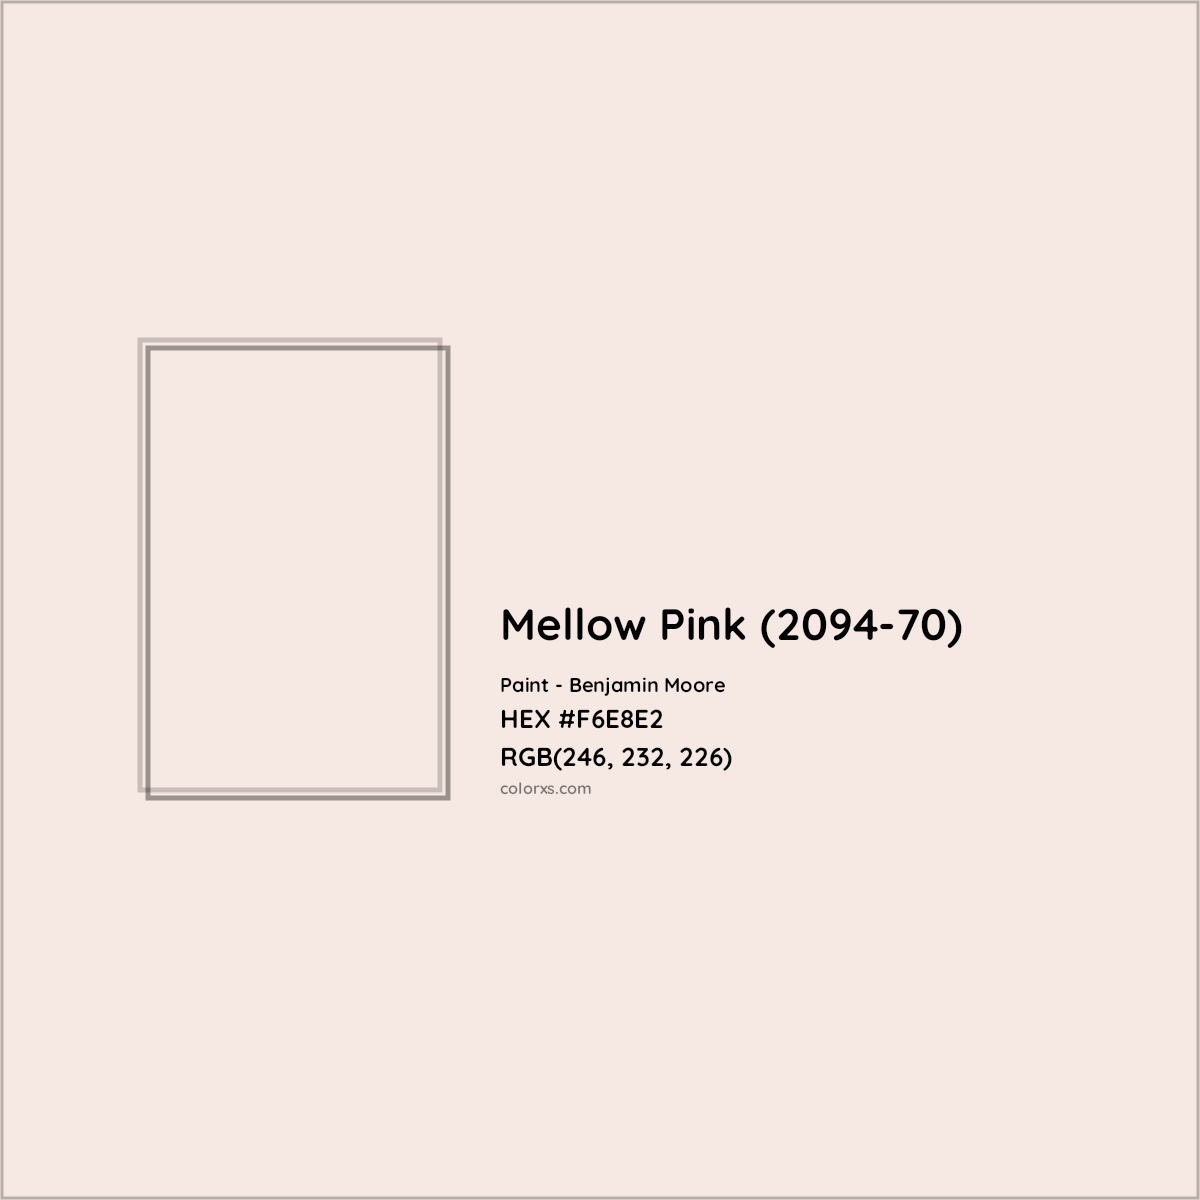 HEX #F6E8E2 Mellow Pink (2094-70) Paint Benjamin Moore - Color Code